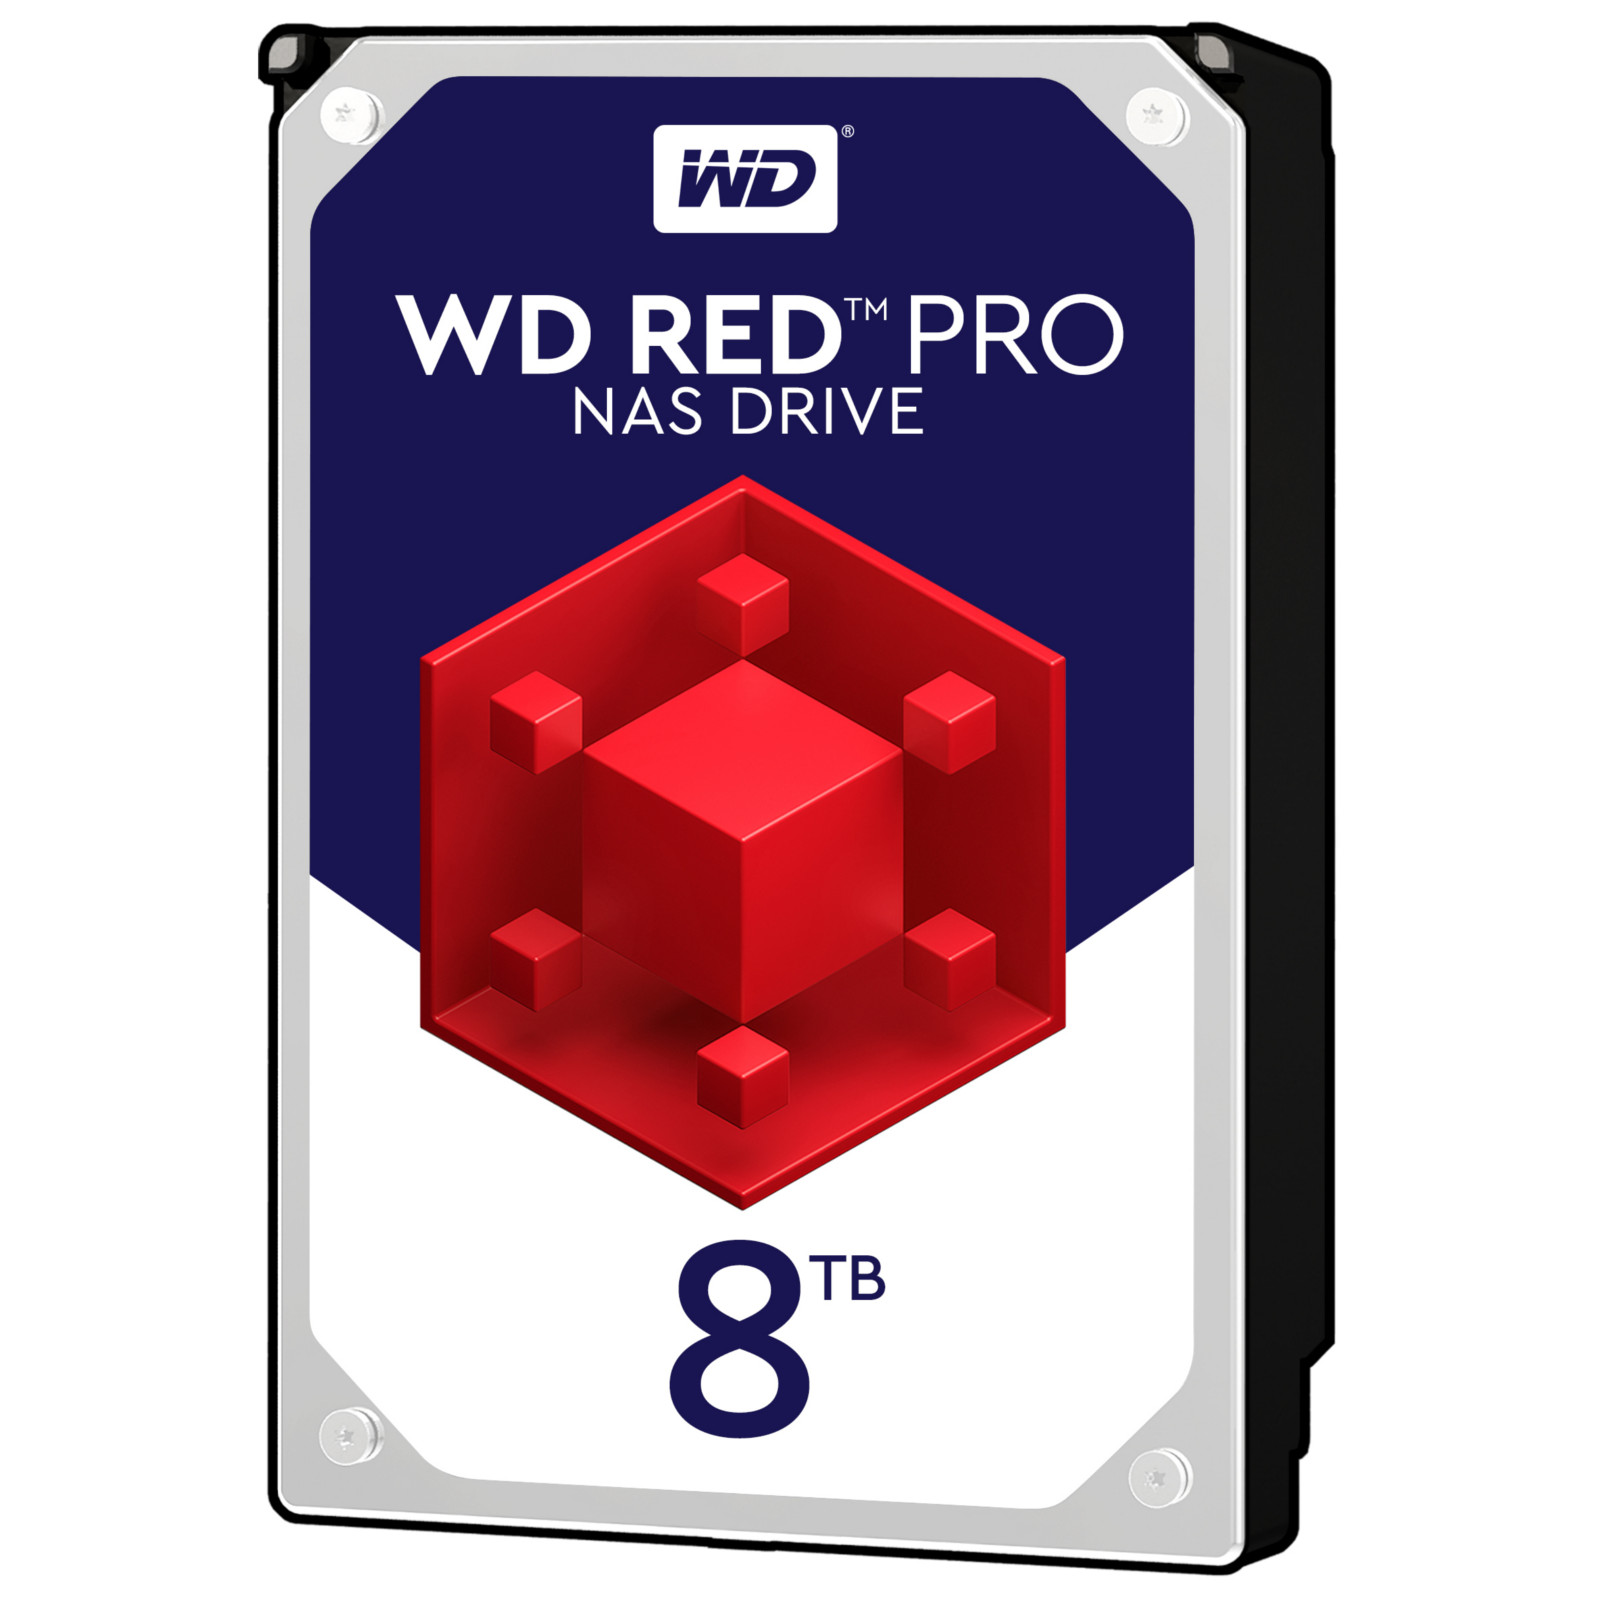 WD - WD 8TB Red Pro 7200rpm HDD 256MB Cache Internal NAS Hard Drive (WD8003FFBX)